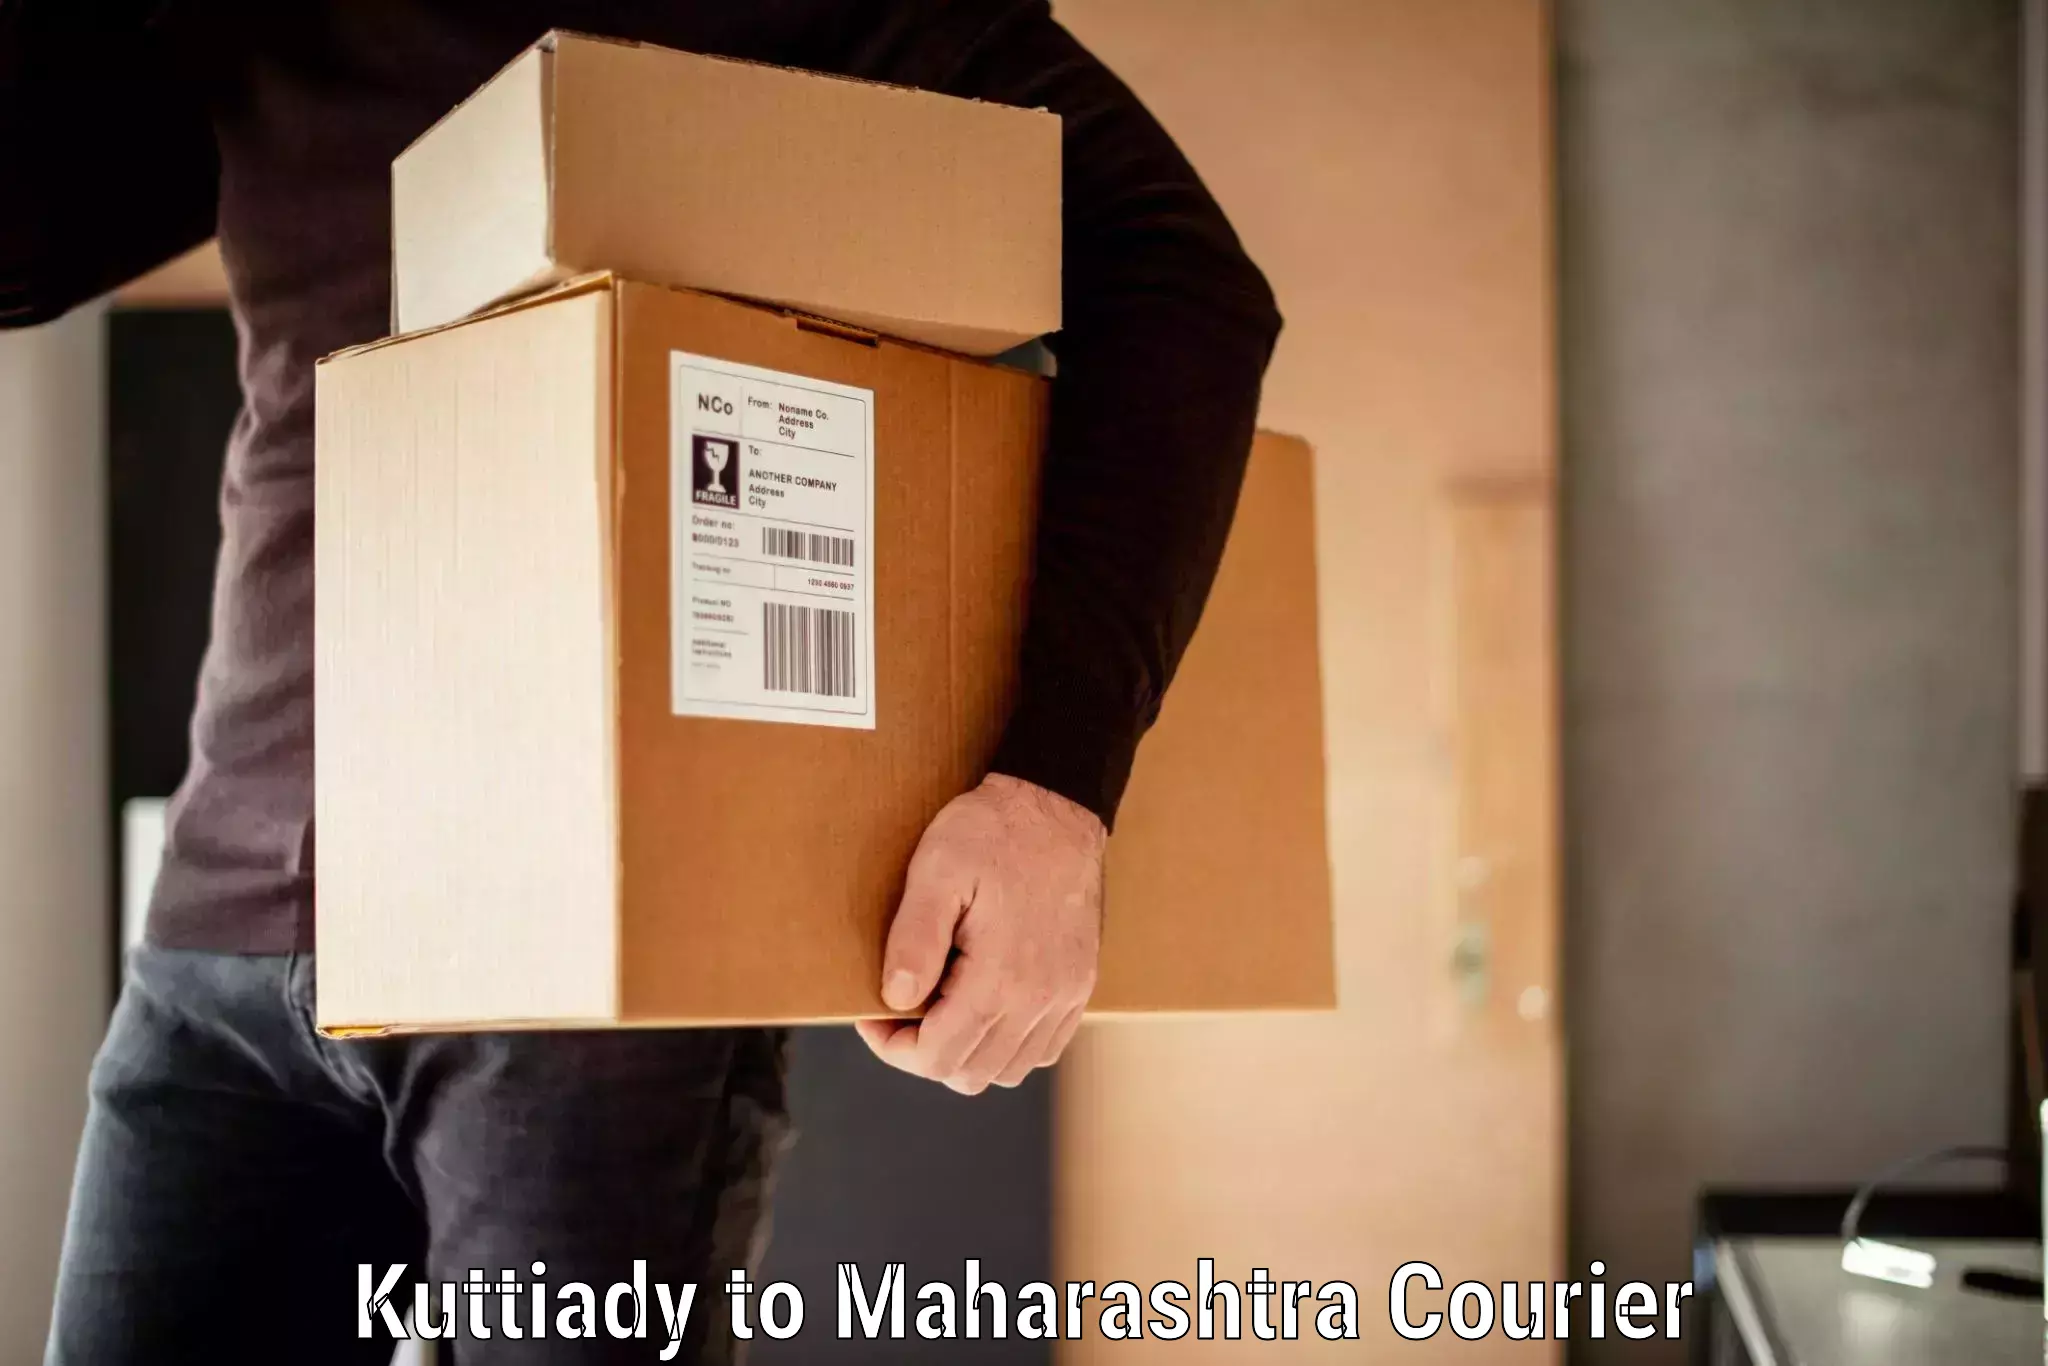 Baggage transport scheduler Kuttiady to Kandhar